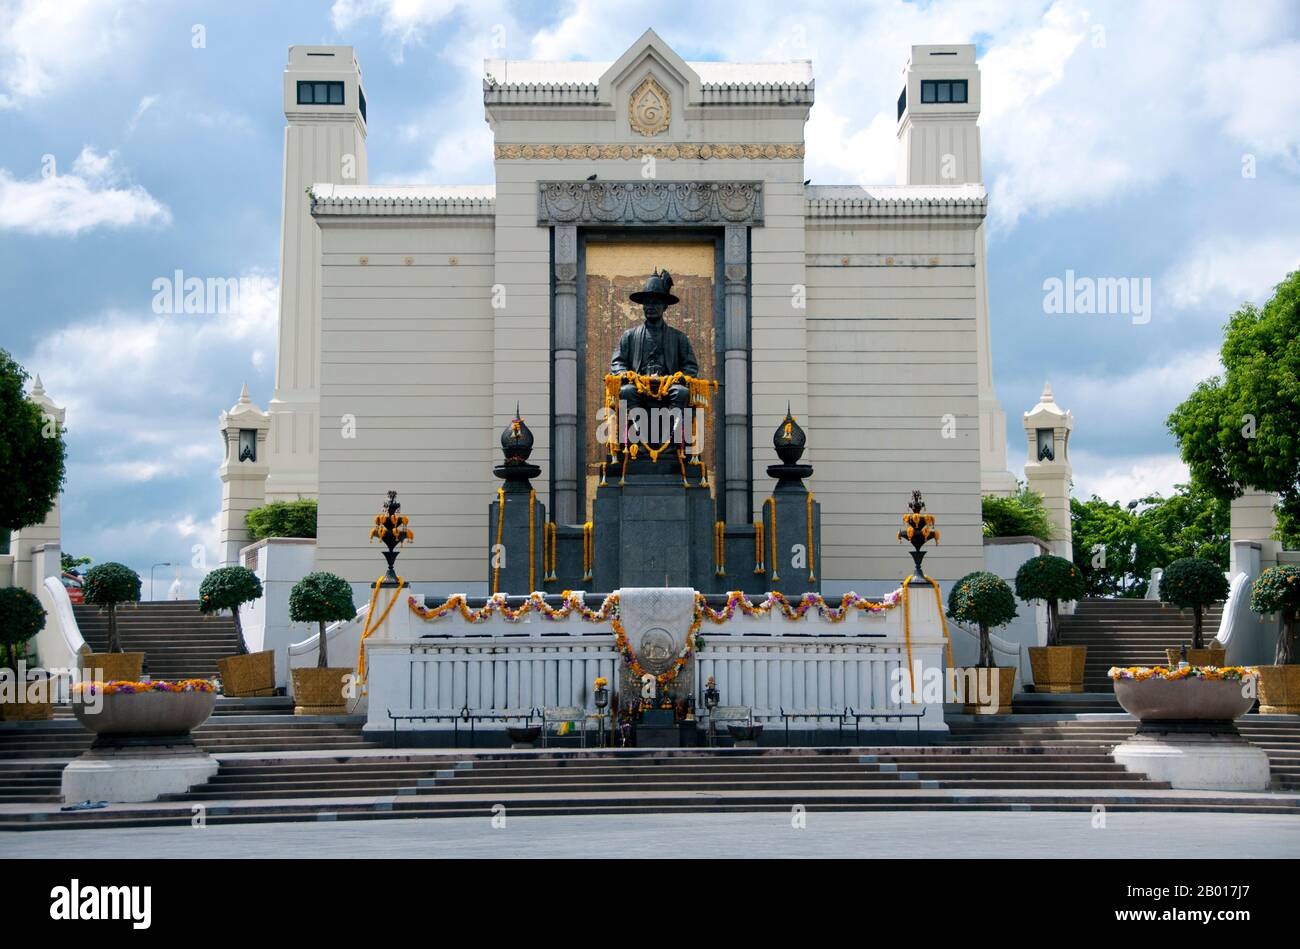 Thailand: King Rama I Monument an der Memorial Bridge, Bangkok. Phra bat Somdet Phra Poramintharamaha Chakri Borommanat Phra Buddha Yodfa Chulaloke, posthum 'der große' oder Rama I (20. März 1736 – 7. September 1809), war der Gründer und der erste Monarch des regierenden Hauses von Chakri von Siam (heute Thailand). 1782 bestieg er den Thron, nachdem er eine Rebellion besiegt hatte, die König Taksin von Thonburi abgesetzt hatte. Er wurde auch als Gründer von Rattanakosin (heute Bangkok) als neue Hauptstadt des wiedervereinigten Königreichs gefeiert. Rama Ich wurde im Königreich Ayutthaya geboren. Stockfoto